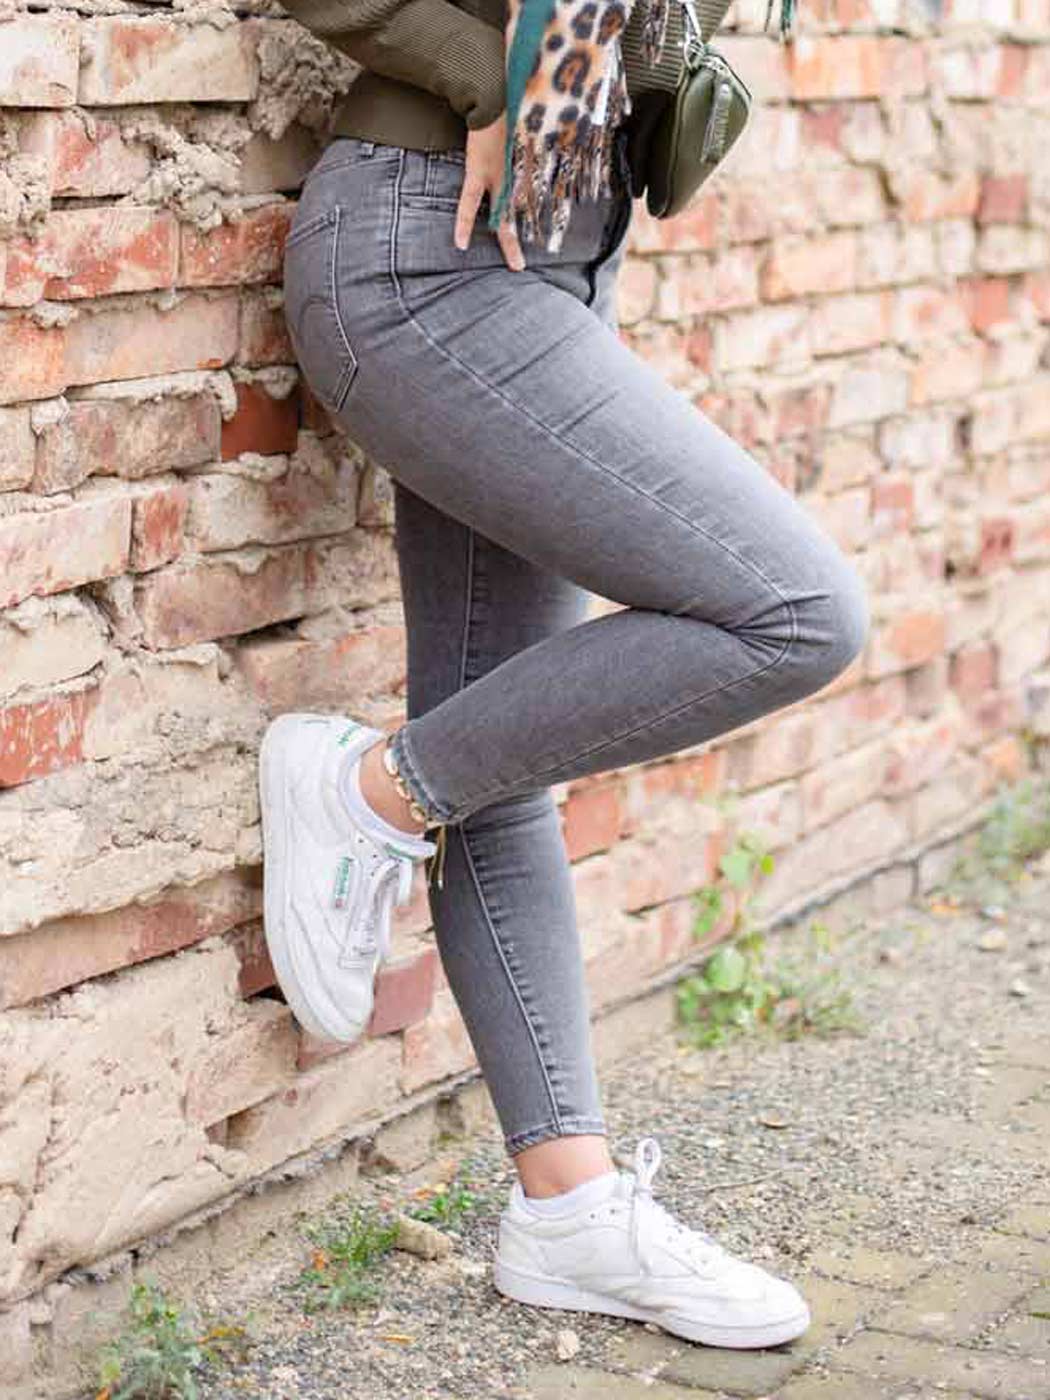 Frau in grauer Skinny Jeans stellt ein Bein angewinkelt an eine Mauer